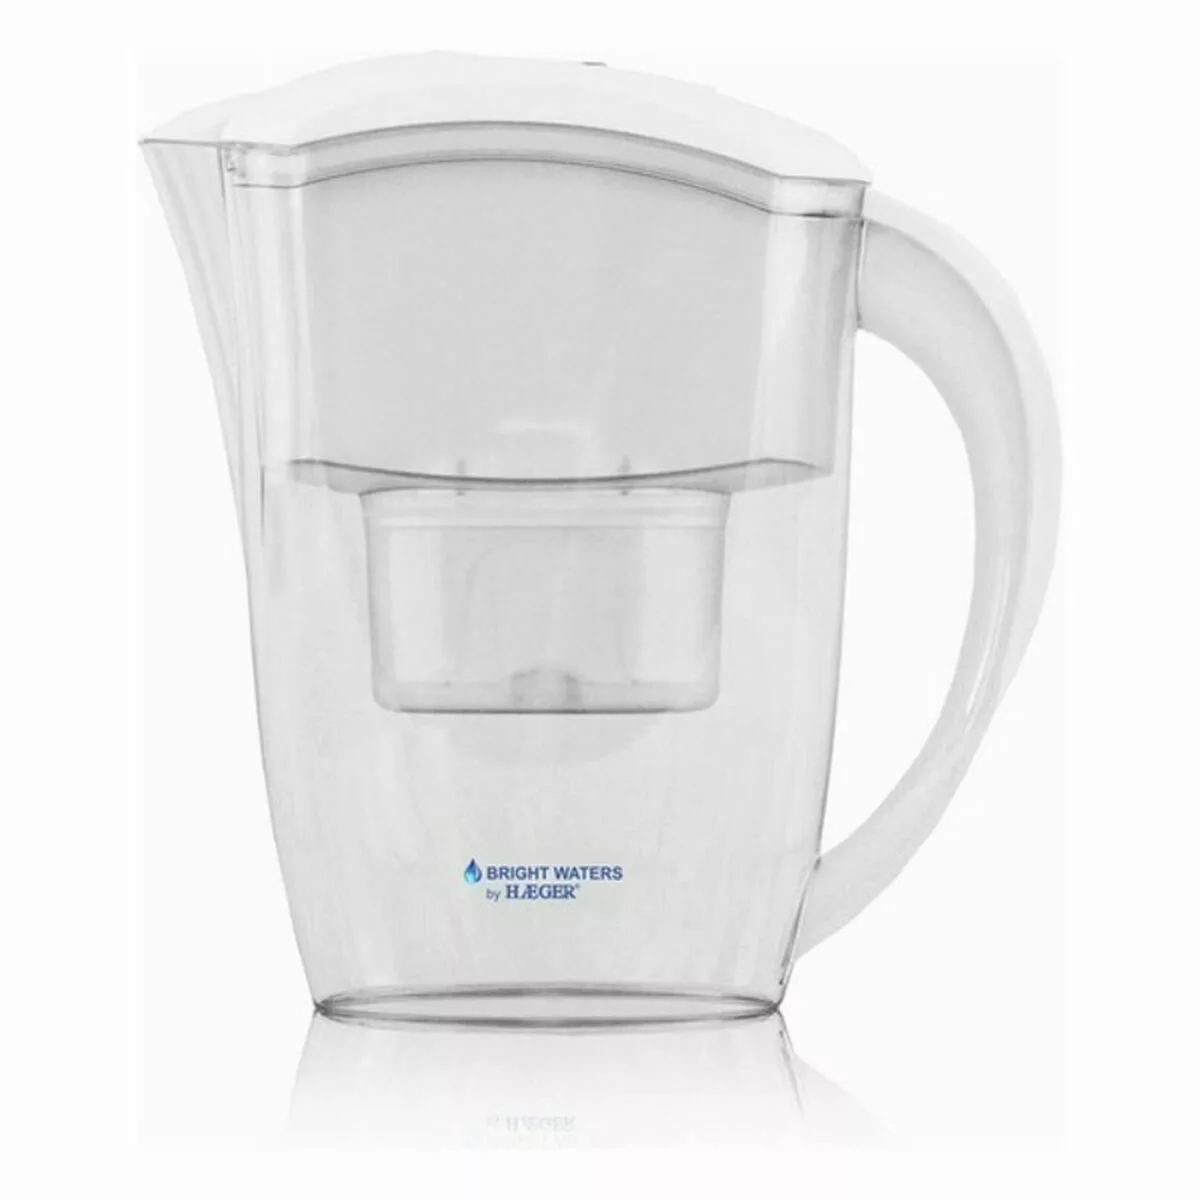 Filter-karaffe Haeger Bright Waters Weiß 2,4 L günstig online kaufen